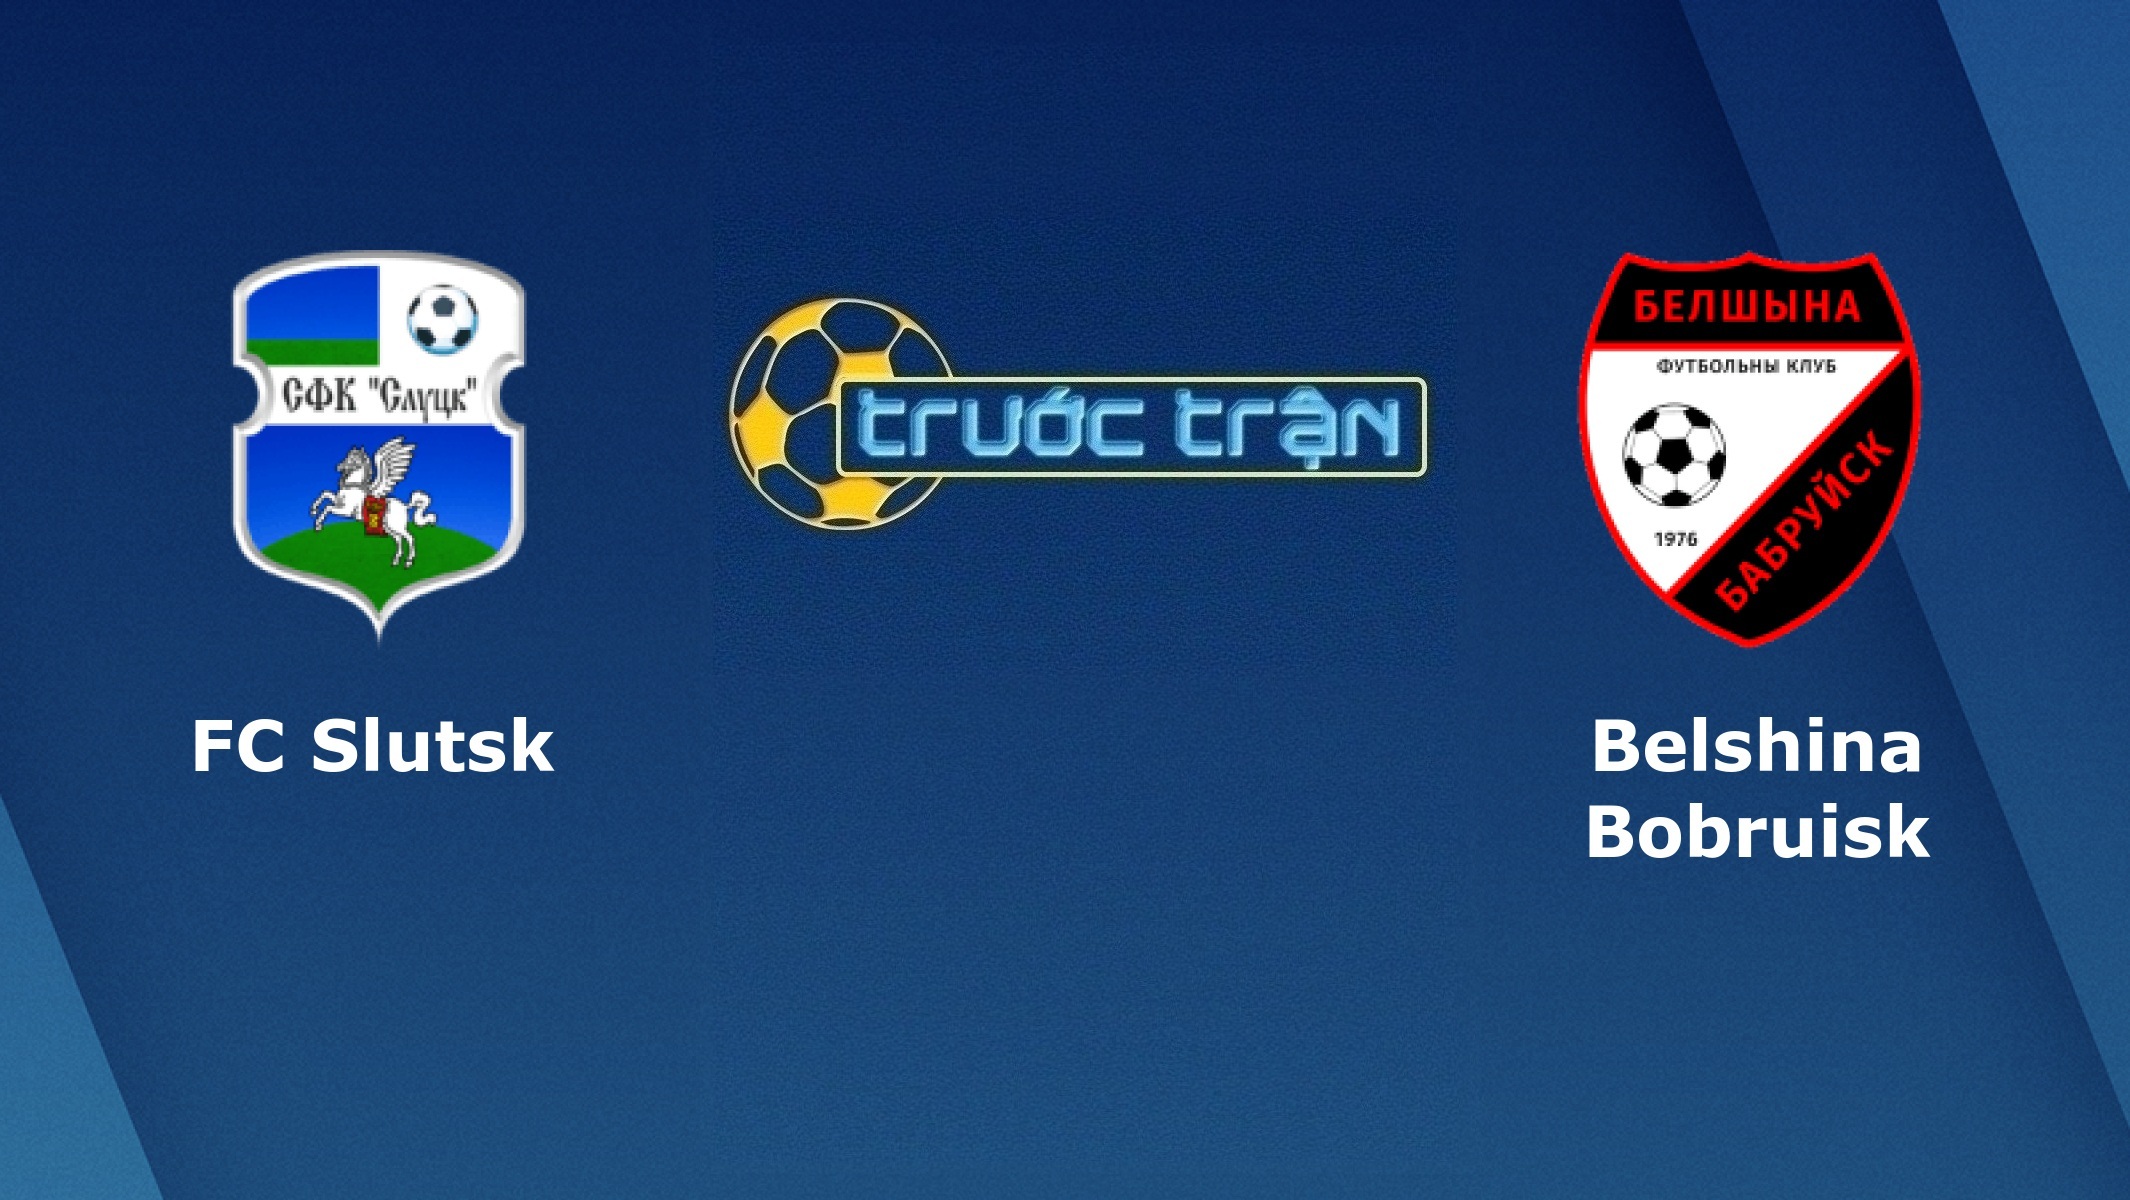 FC Slutsk vs FC Belshina Babruisk – Tip kèo bóng đá hôm nay – 26/04